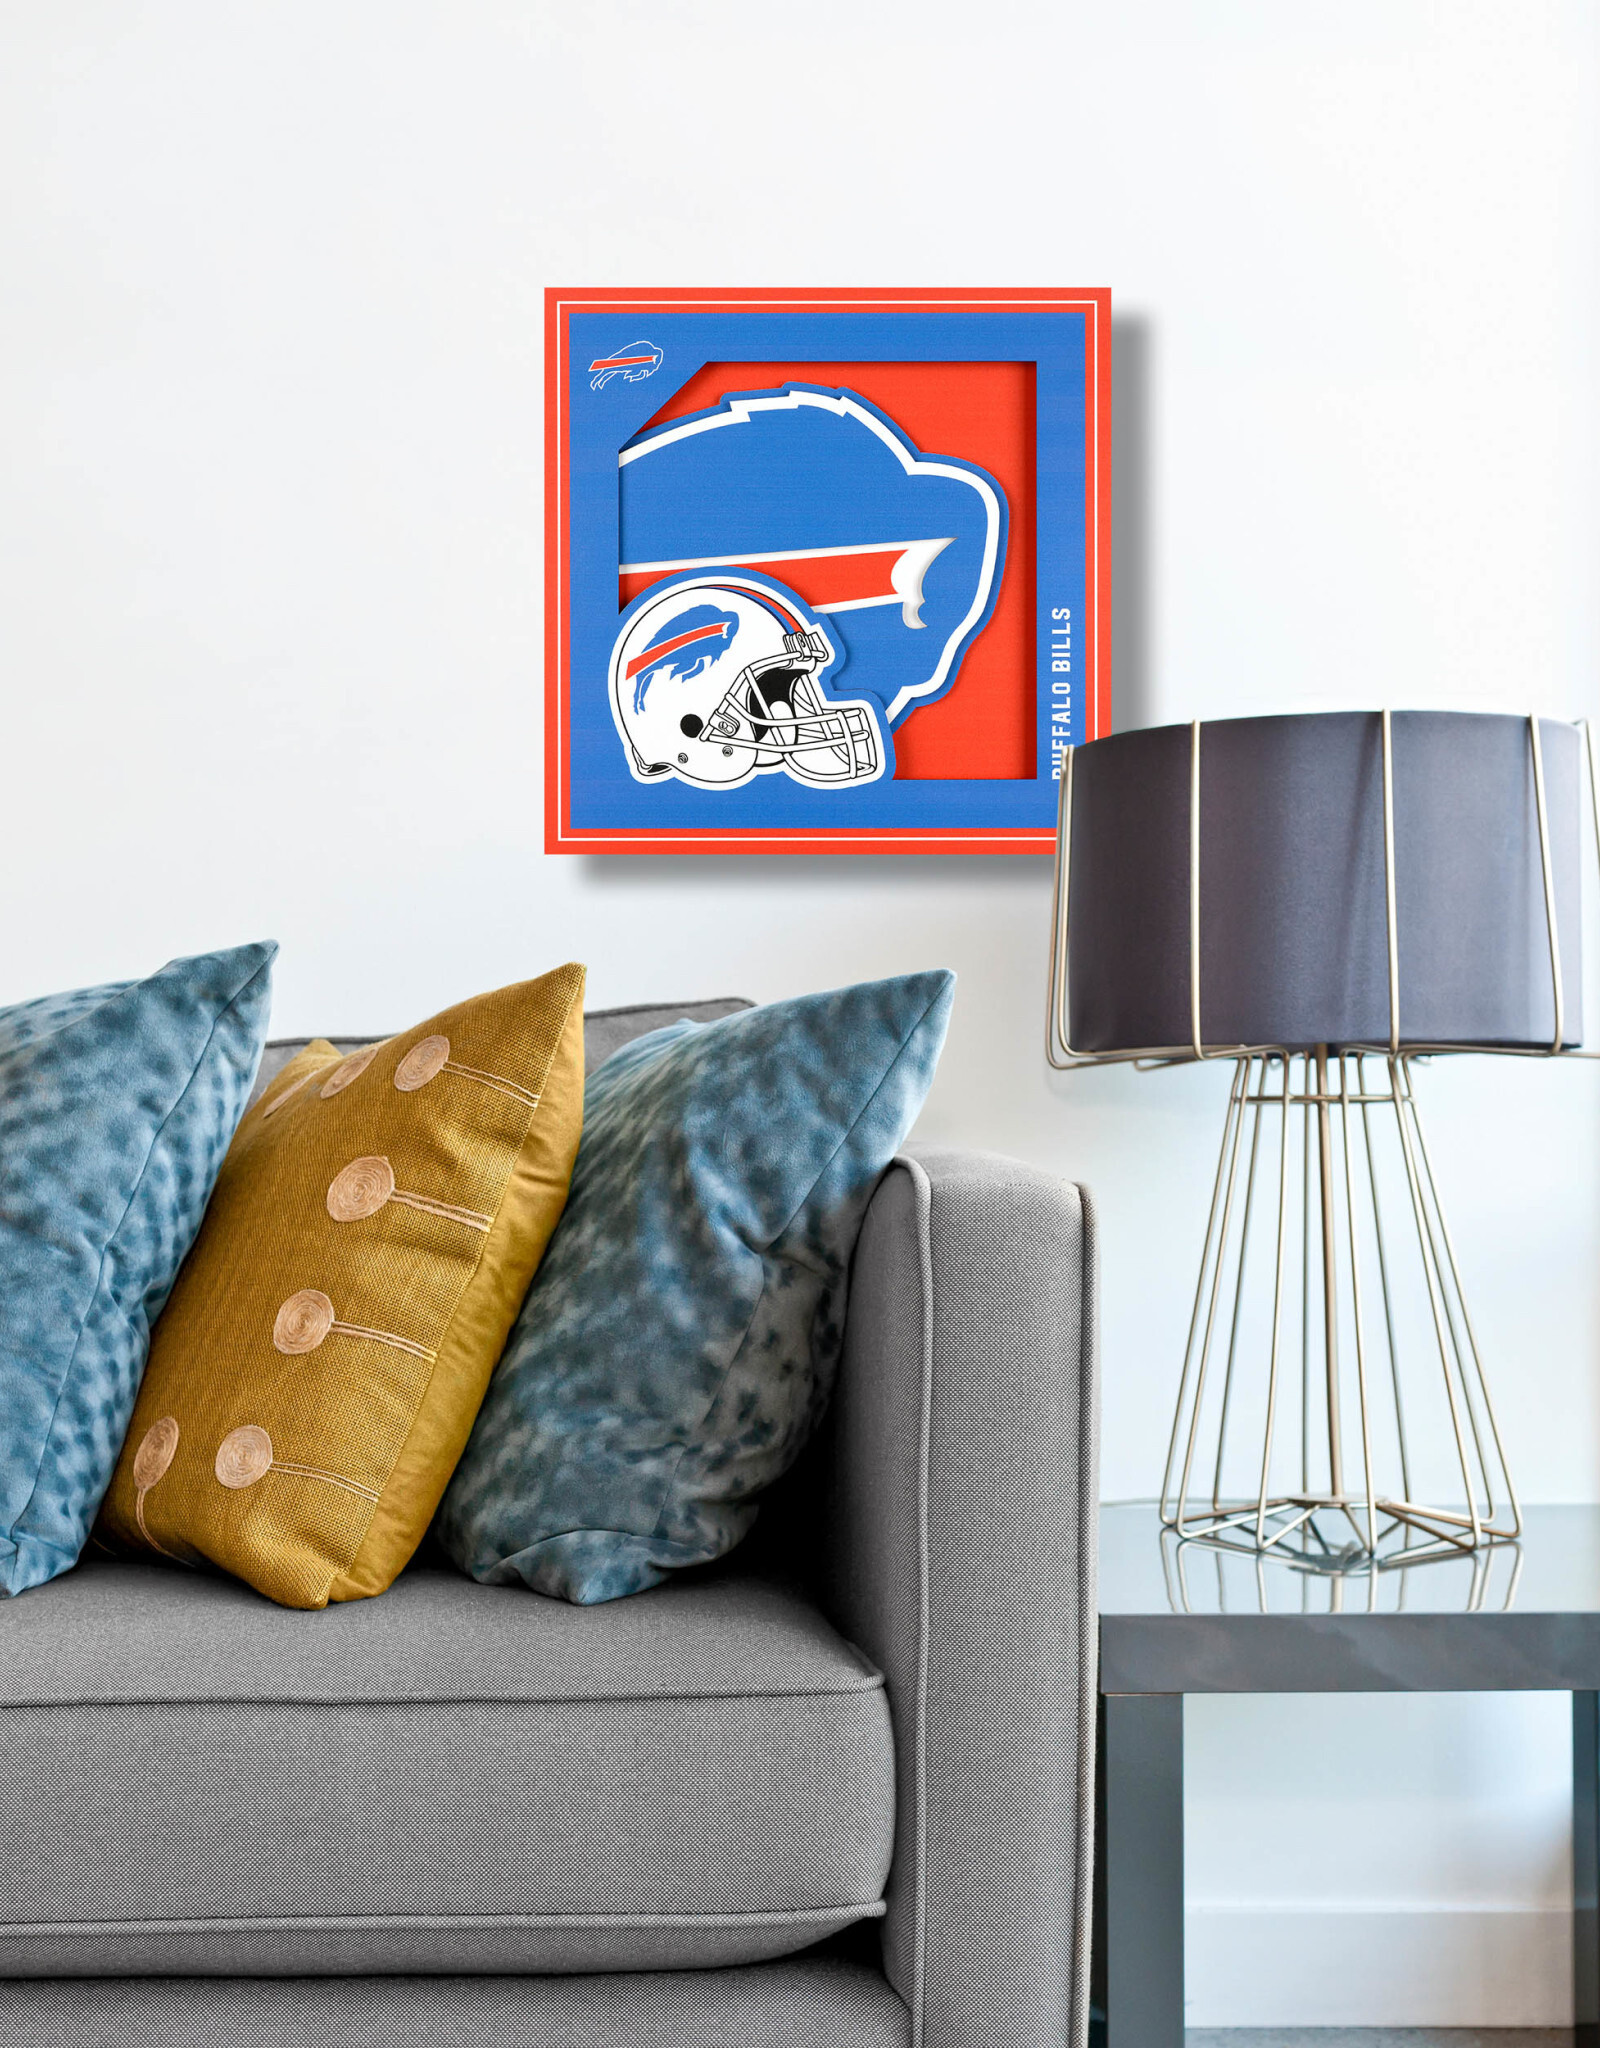 YOU THE FAN Buffalo Bills 3D Logo Series 12x12 Wall Art